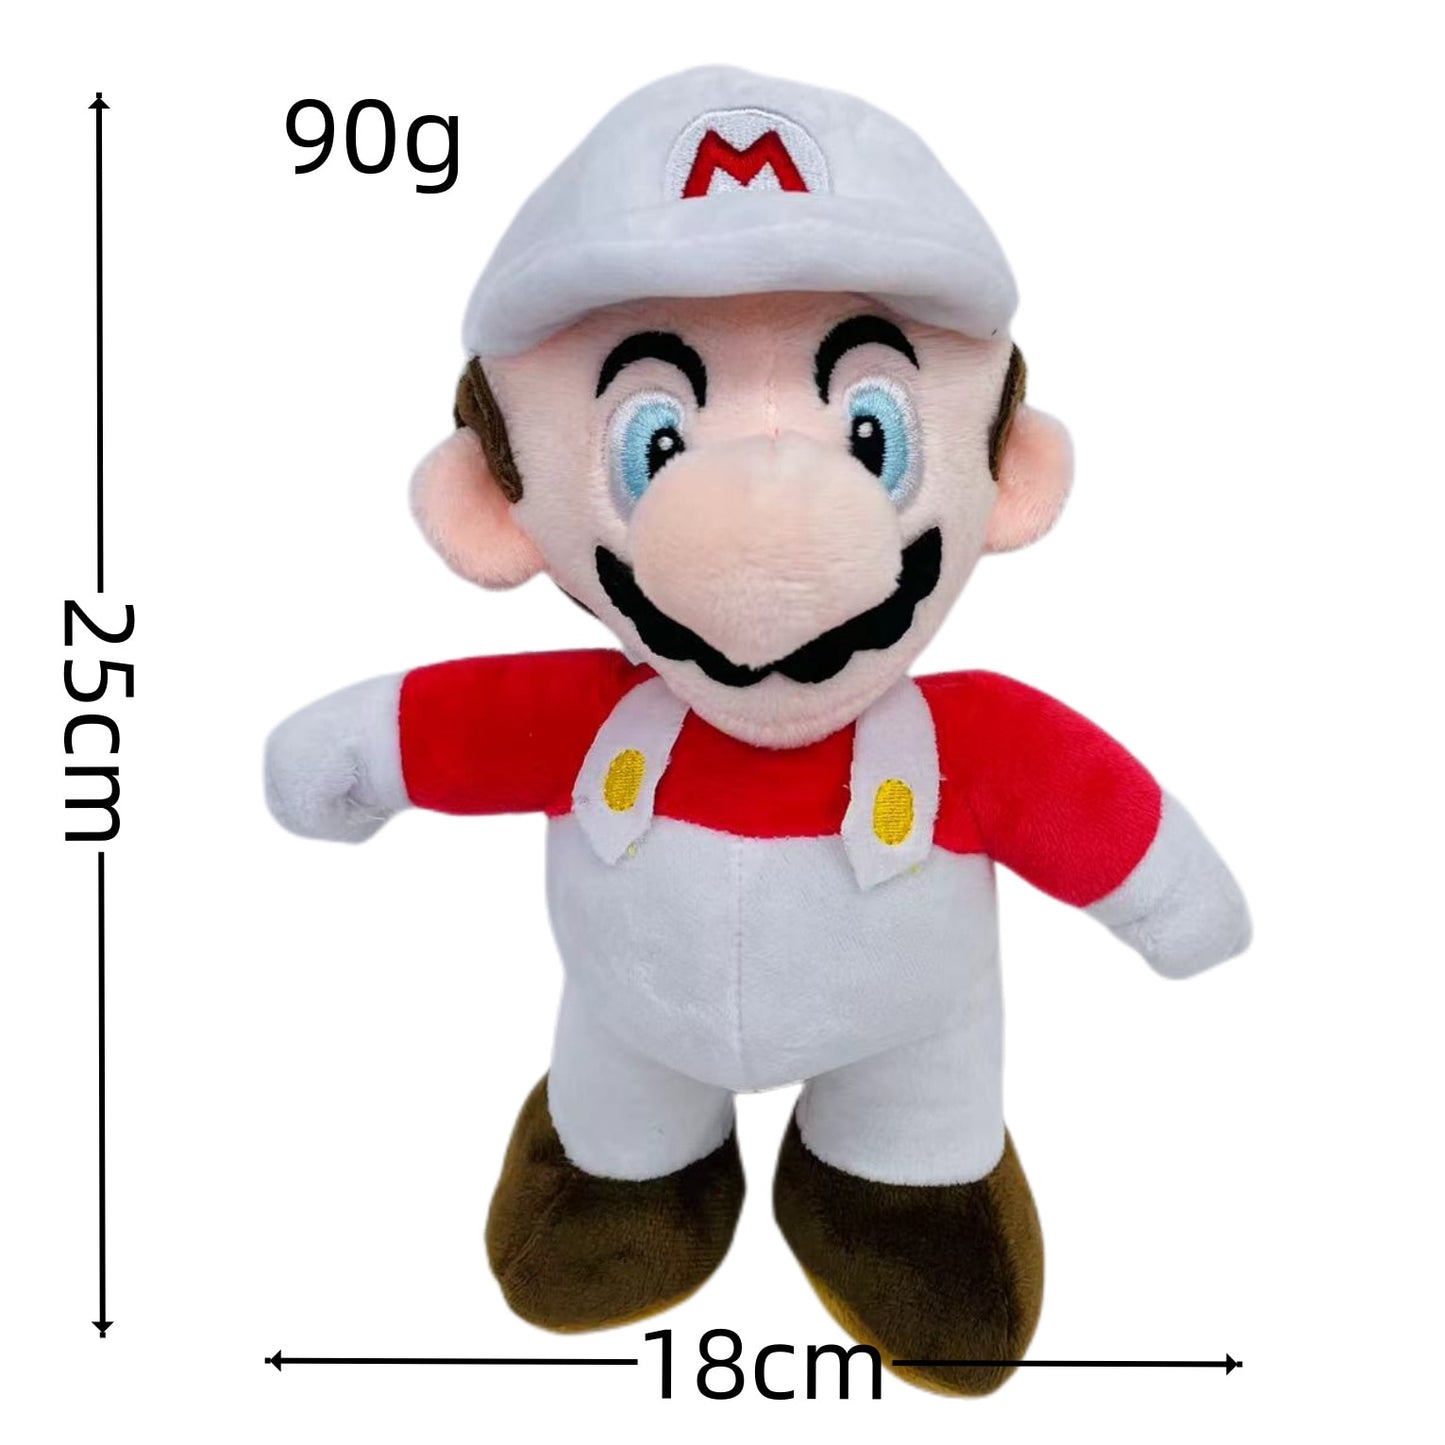 25cm Super Mario Bros Luigi Plush